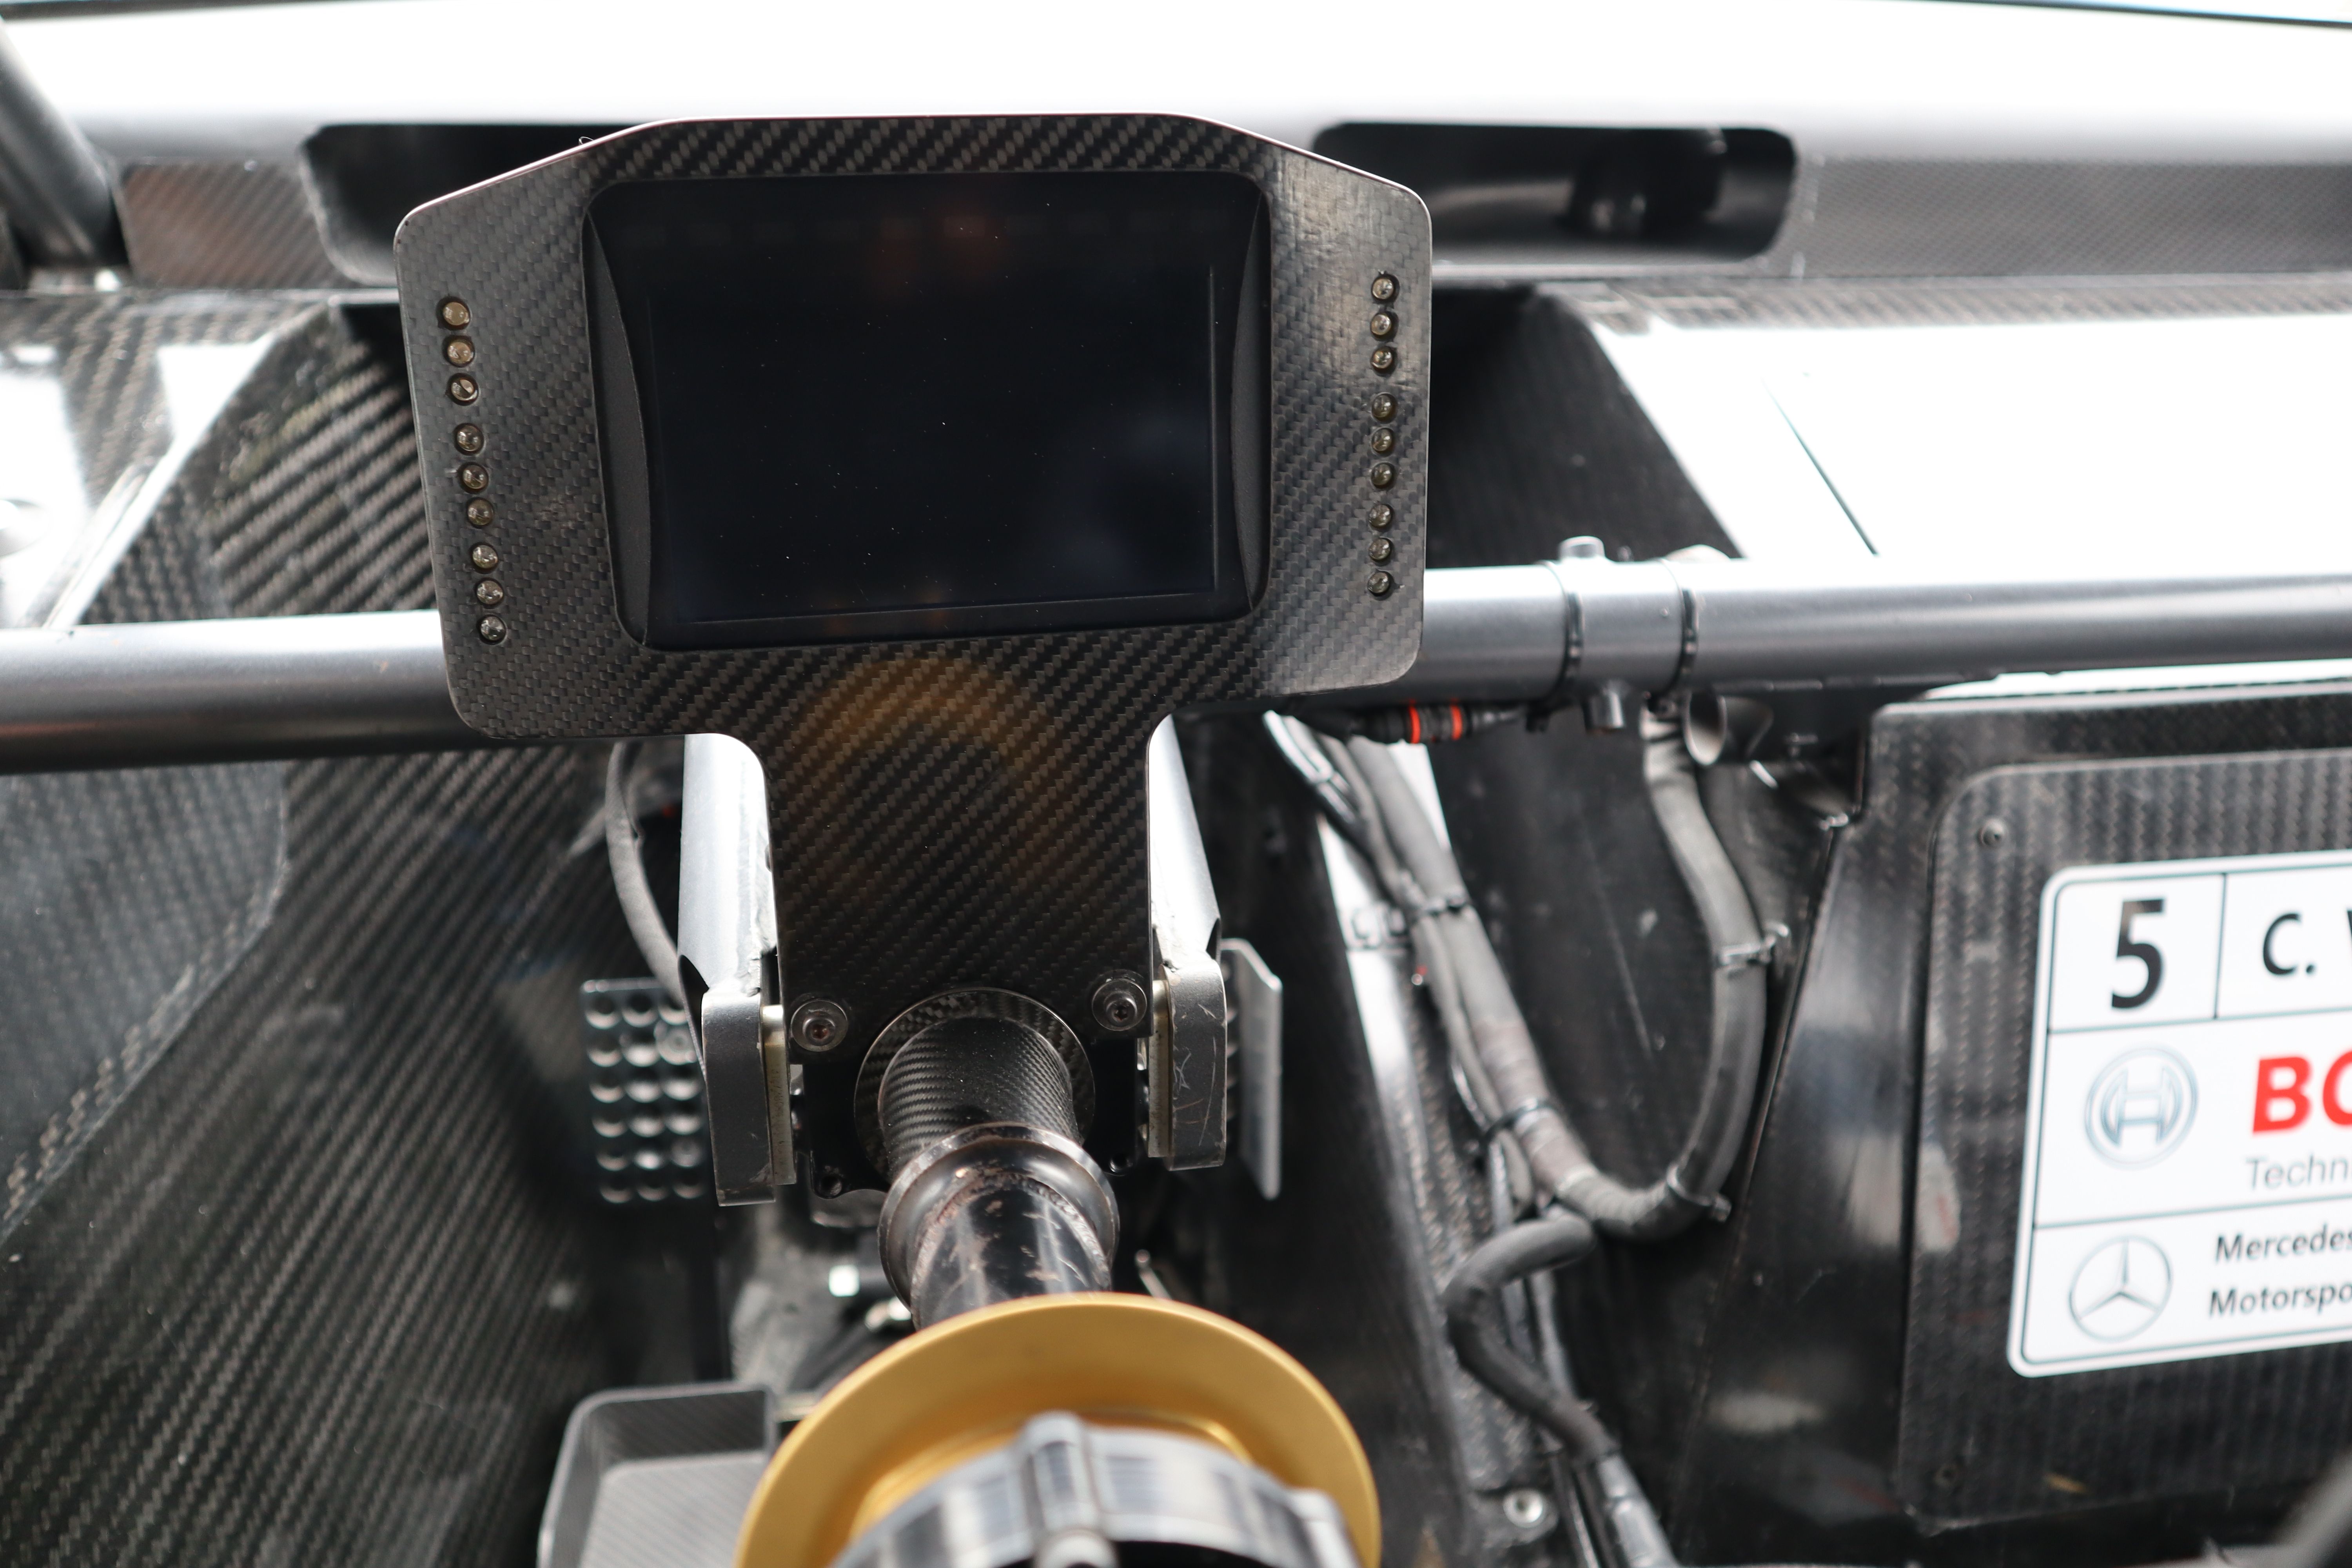 2012 年梅賽德斯奔馳 C 級轎跑車 DTM 底盤 001